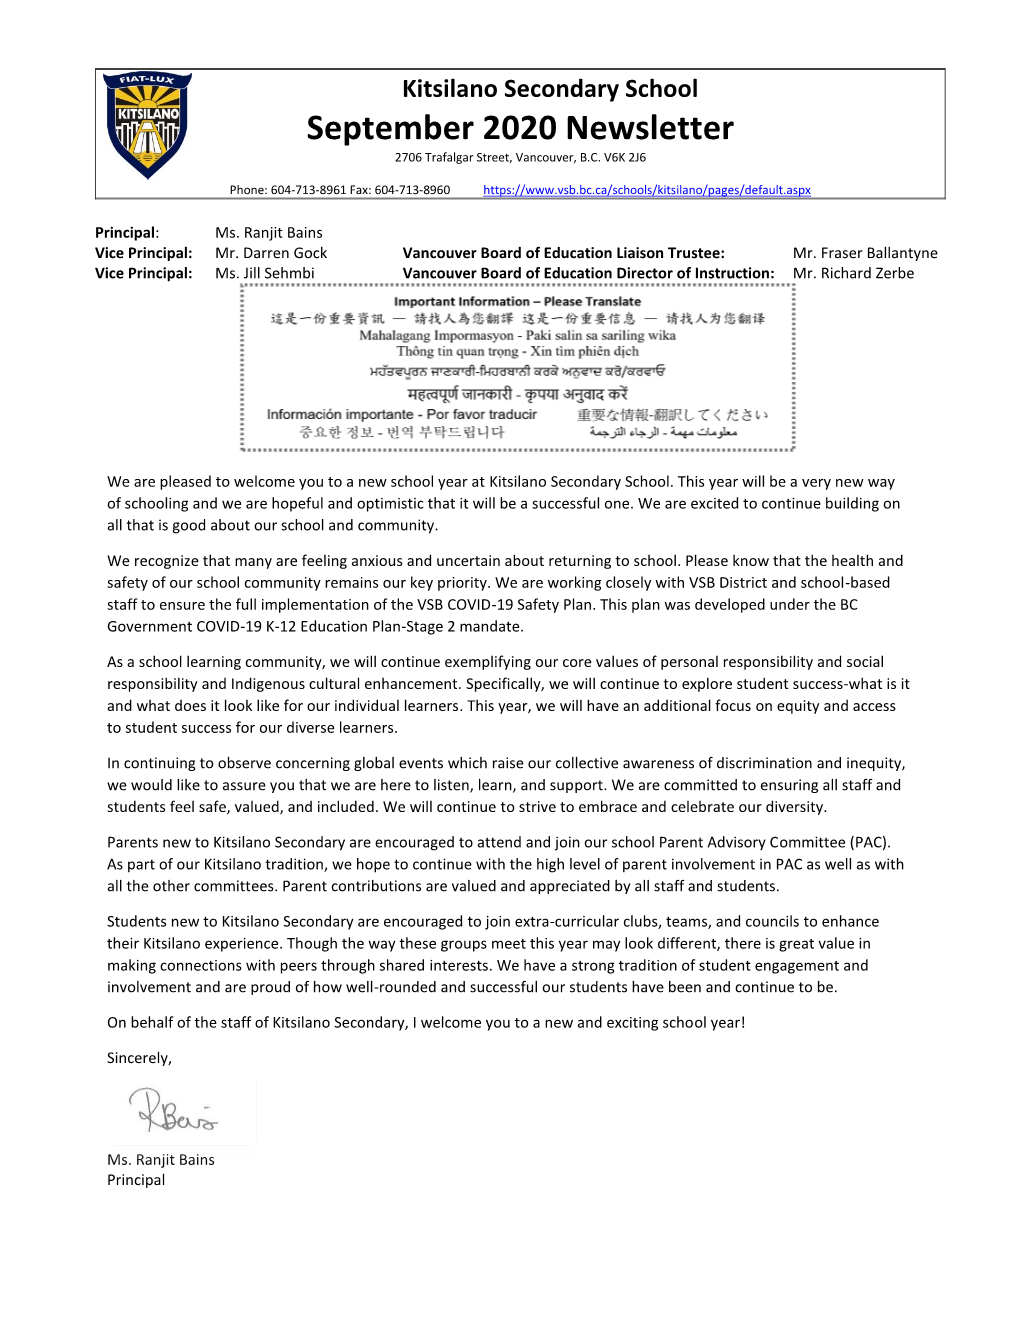 Kitsilano Secondary September 2020 Newsletter